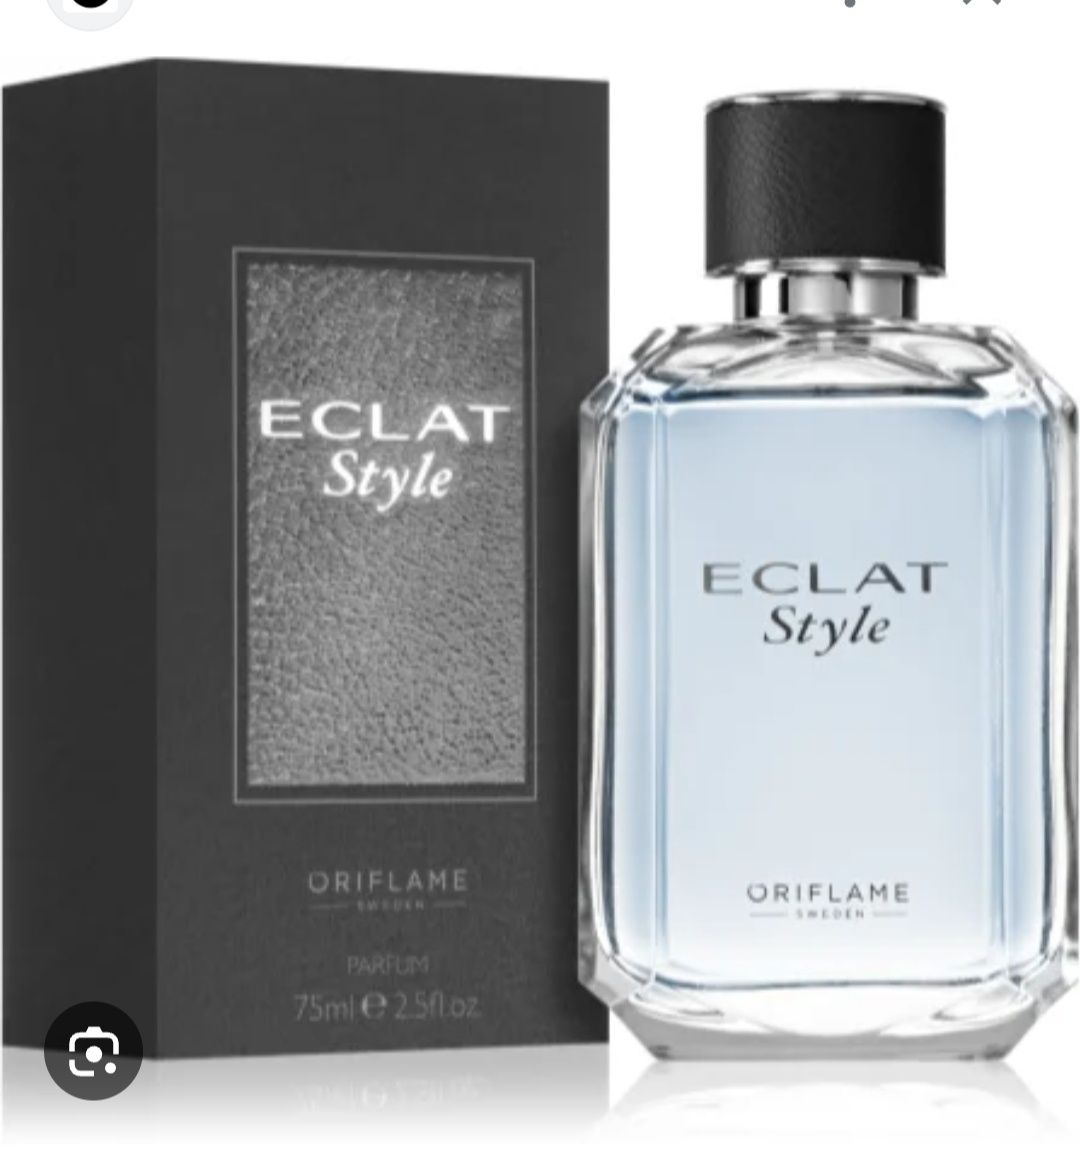 Perfumy Eclat Style dla niego 75ml Oriflame 34522